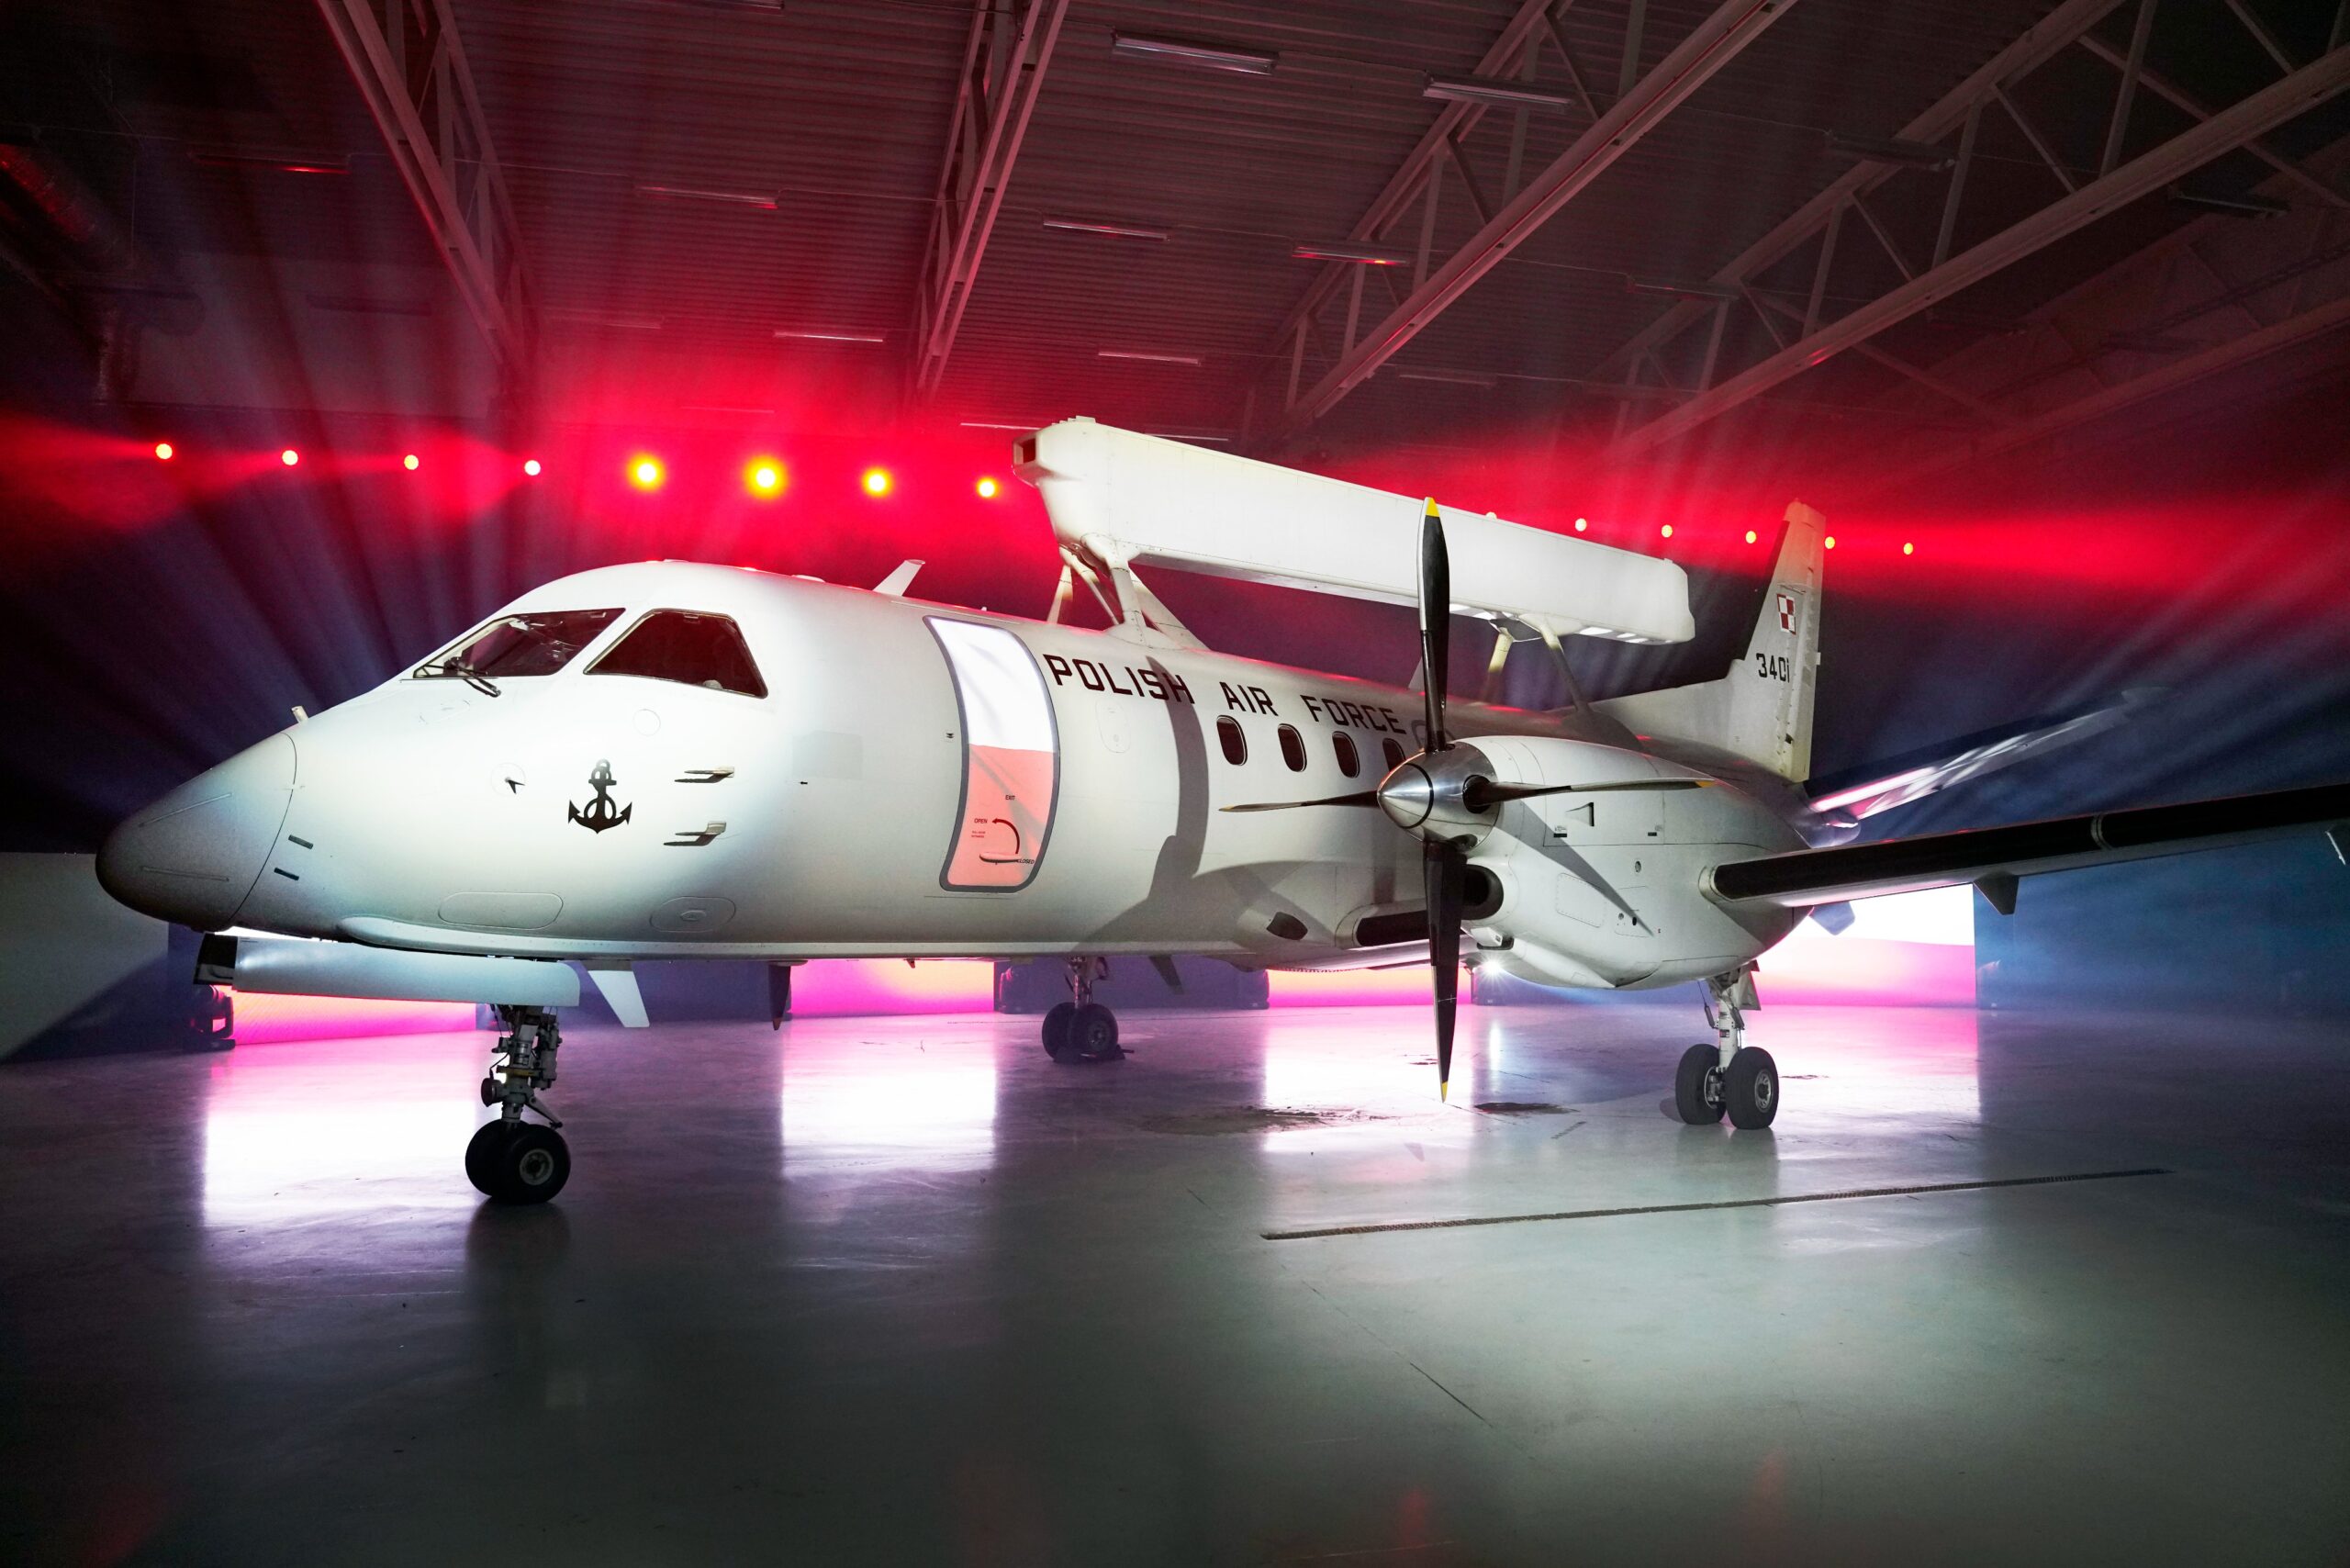 Πολωνία: Παρέλαβε το πρώτο αεροσκάφος έγκαιρης προειδοποίησης Saab 340 AEW από την Σουηδία